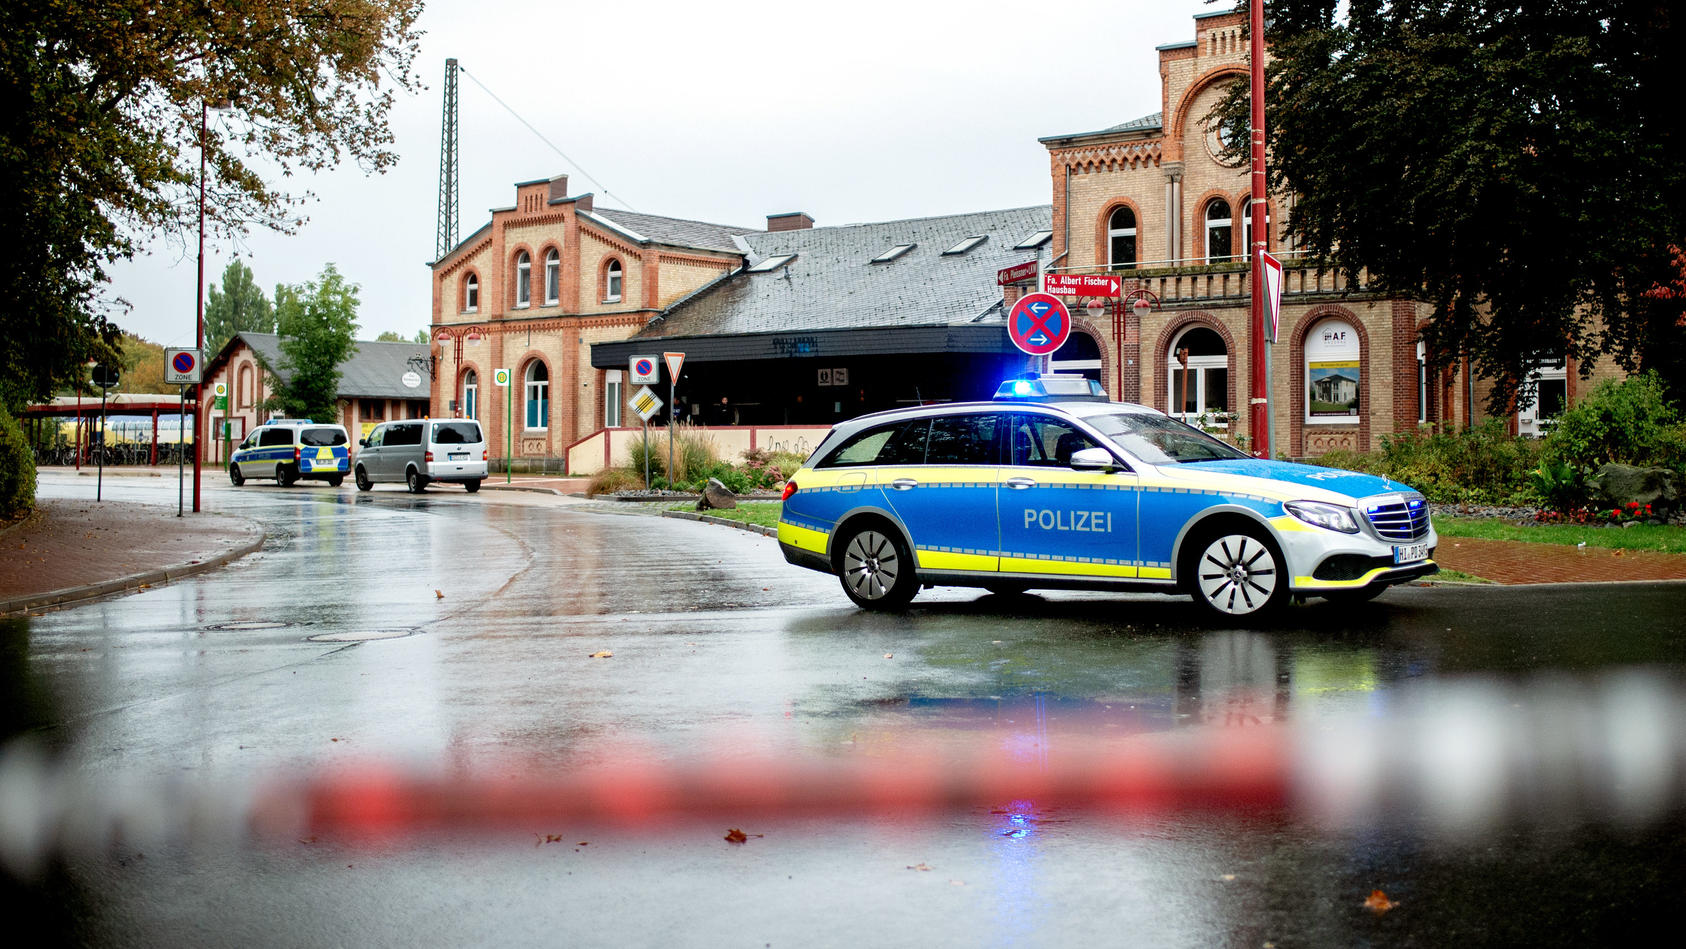 27.09.2019, Niedersachsen, Elze: Ein Fahrzeug der Polizei steht vor dem Bahnhof. Nach der tödlichen Attacke auf eine Frau in Göttingen sucht die Polizei in Niedersachsen weiter nach dem Tatverdächtigen. Bei der Fahndung nach dem mutmaßlichen Mörder k